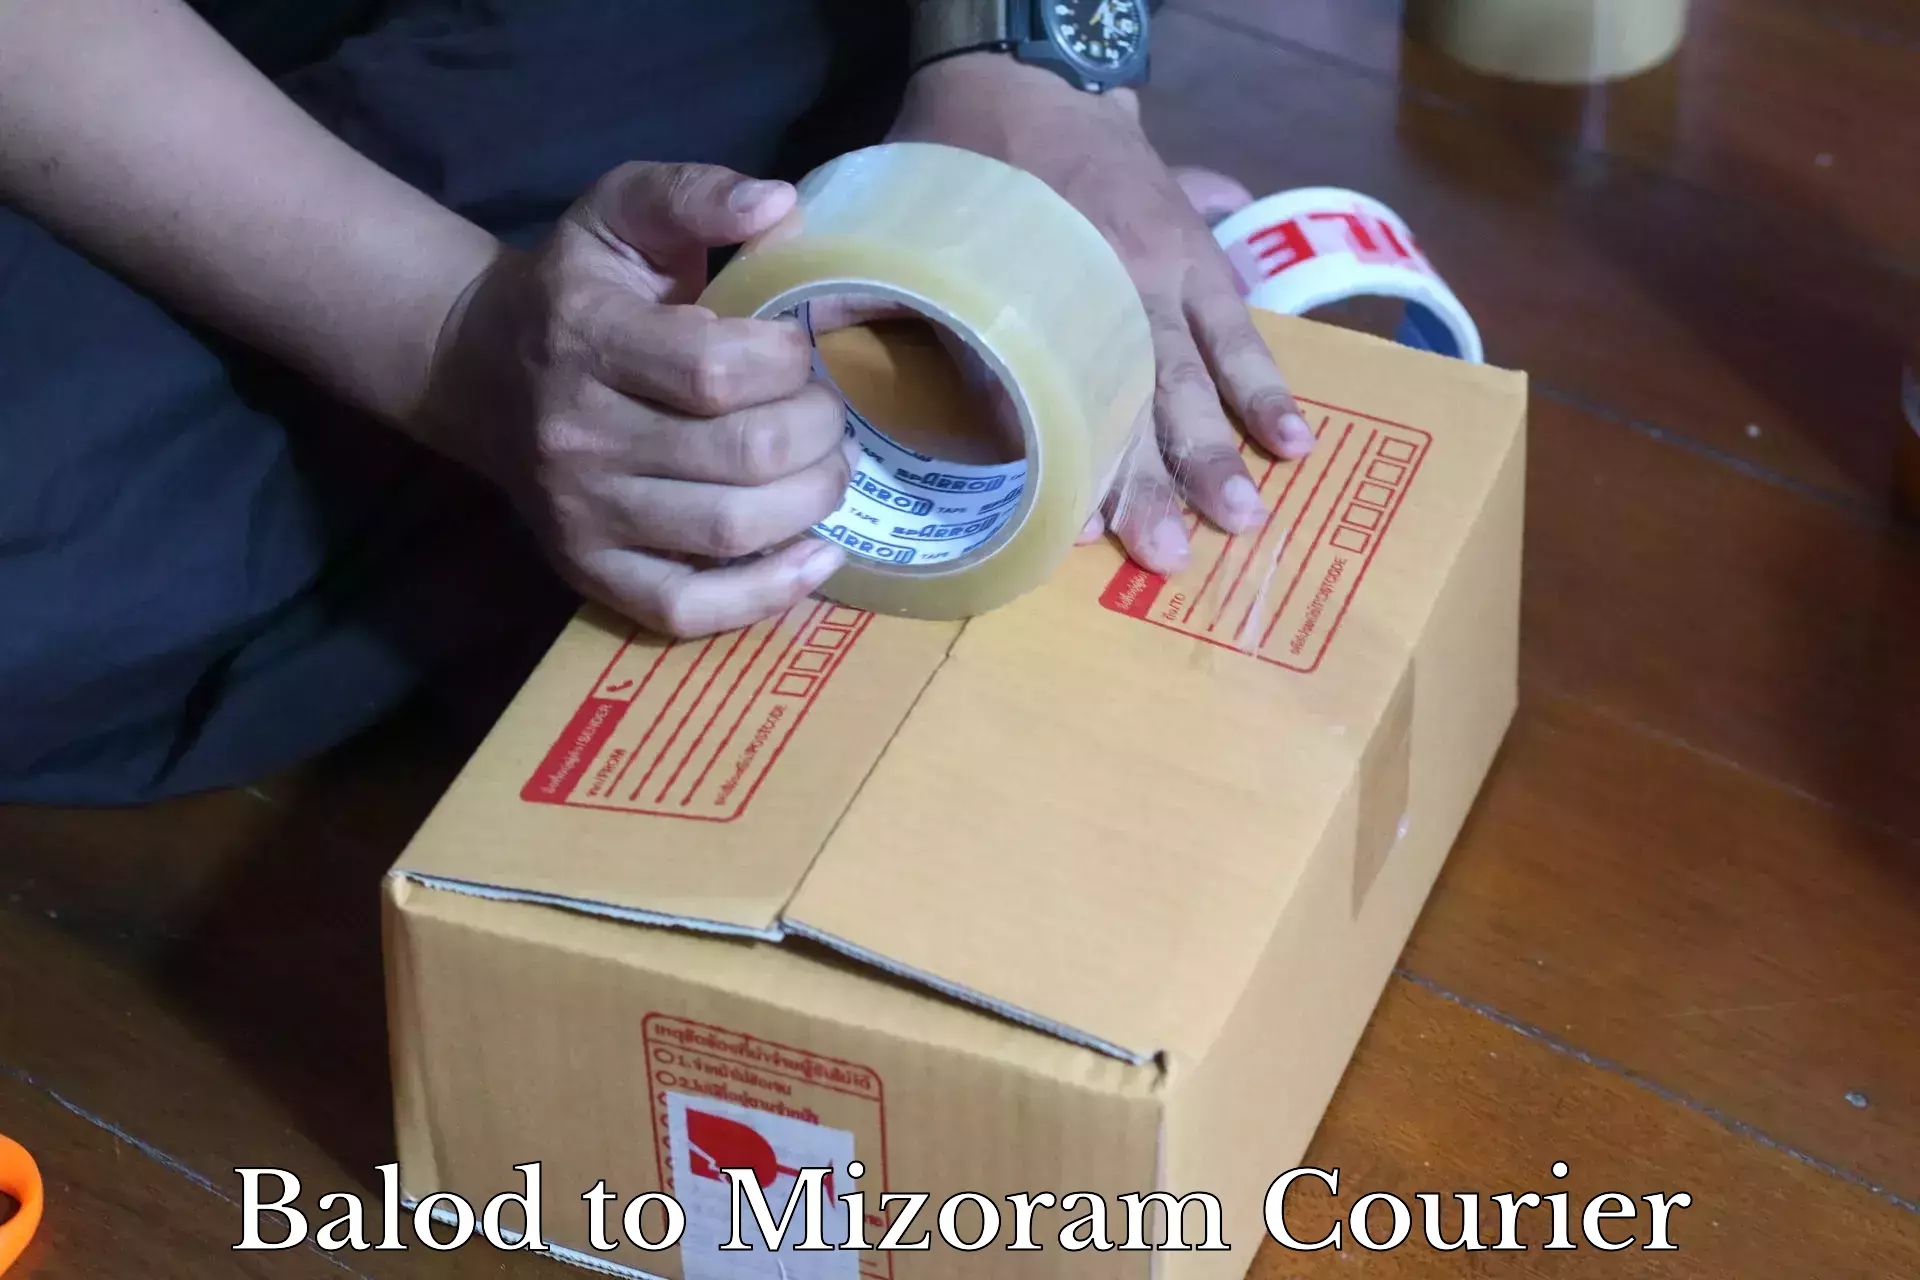 Smart shipping technology Balod to Mizoram